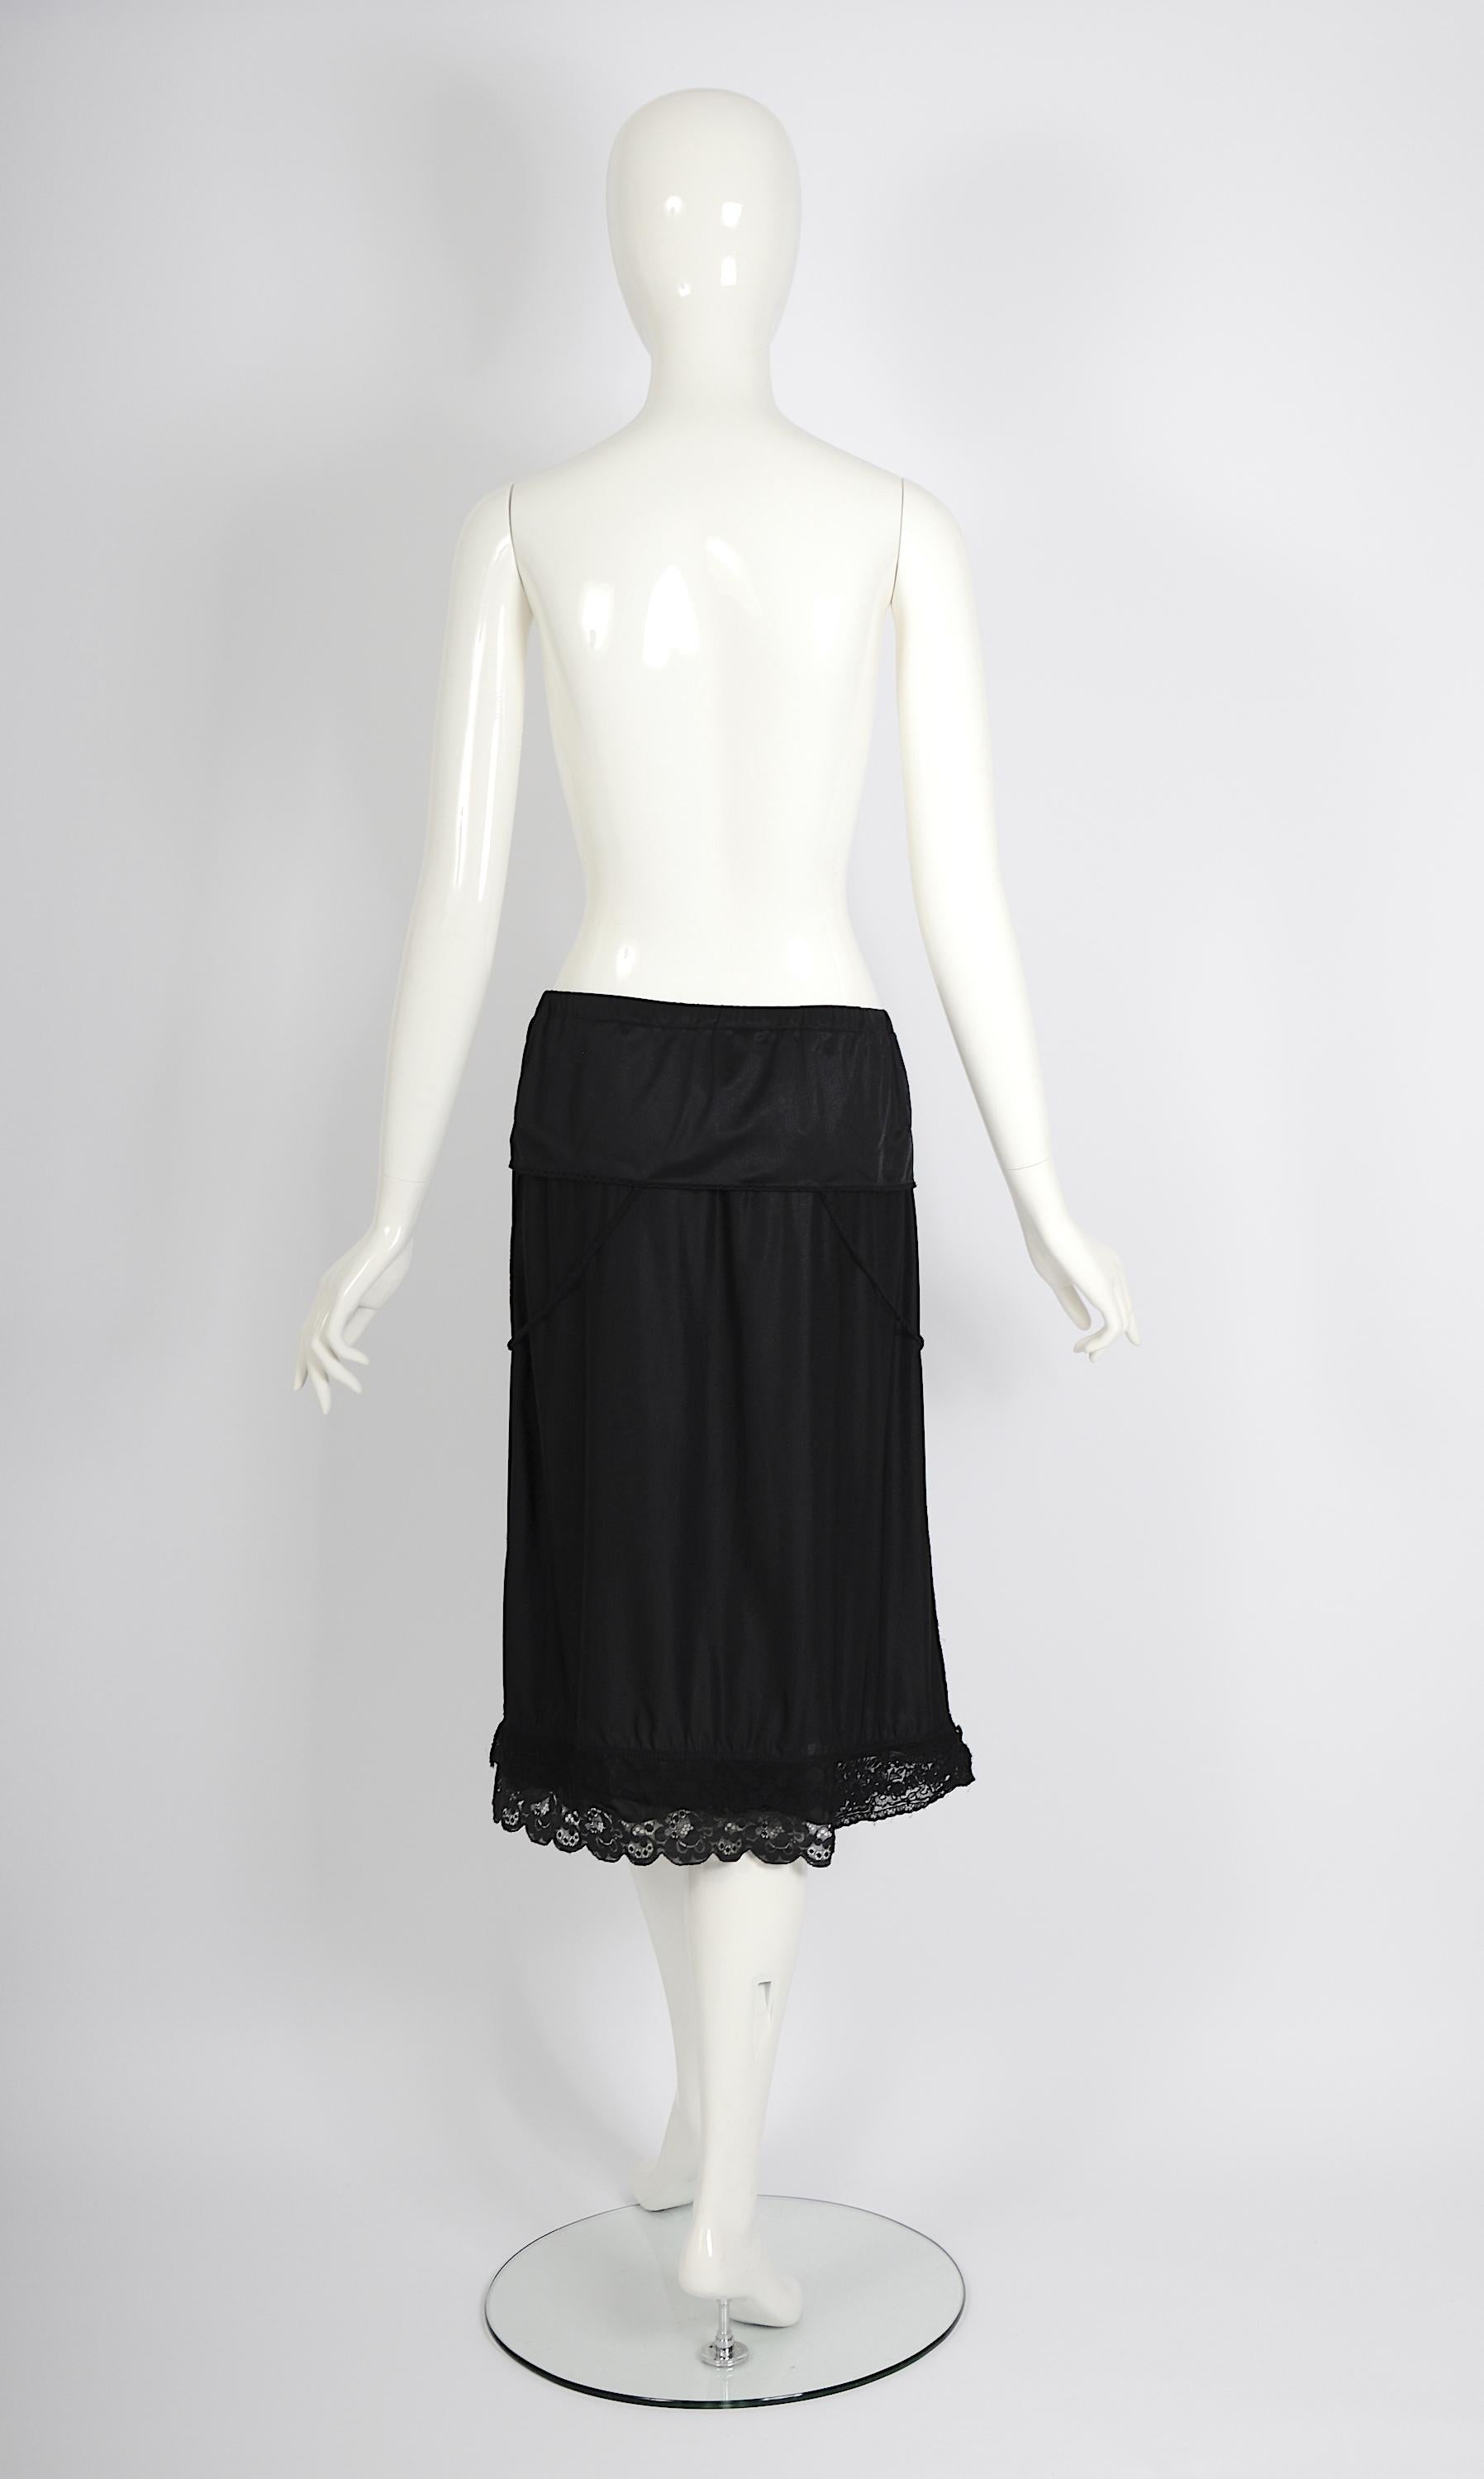 Vintage Martin Margiela artisanal ss 2003 runway black folded dress skirt For Sale 3